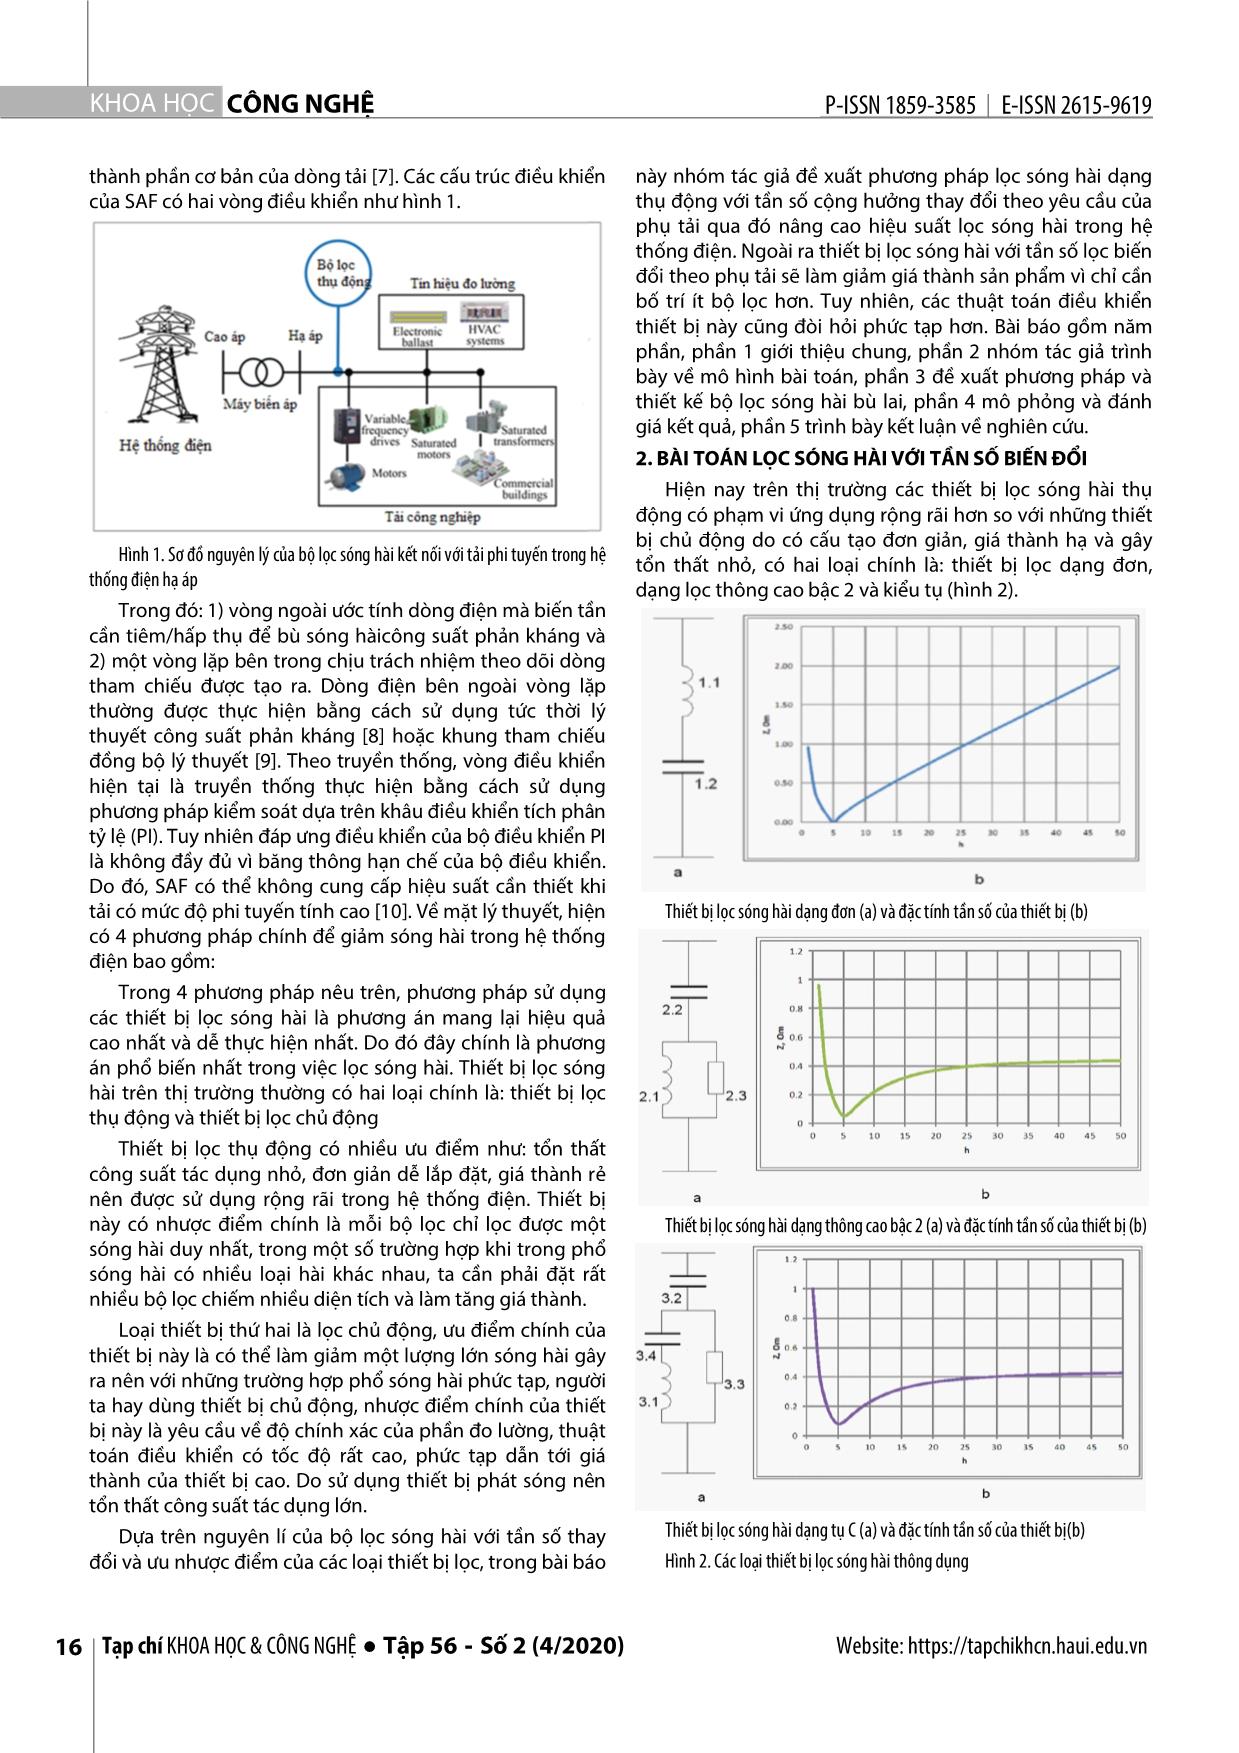 Đề xuất giải pháp thiết bị bù lai trong lọc sóng hài trong hệ thống điện phân phối trang 2